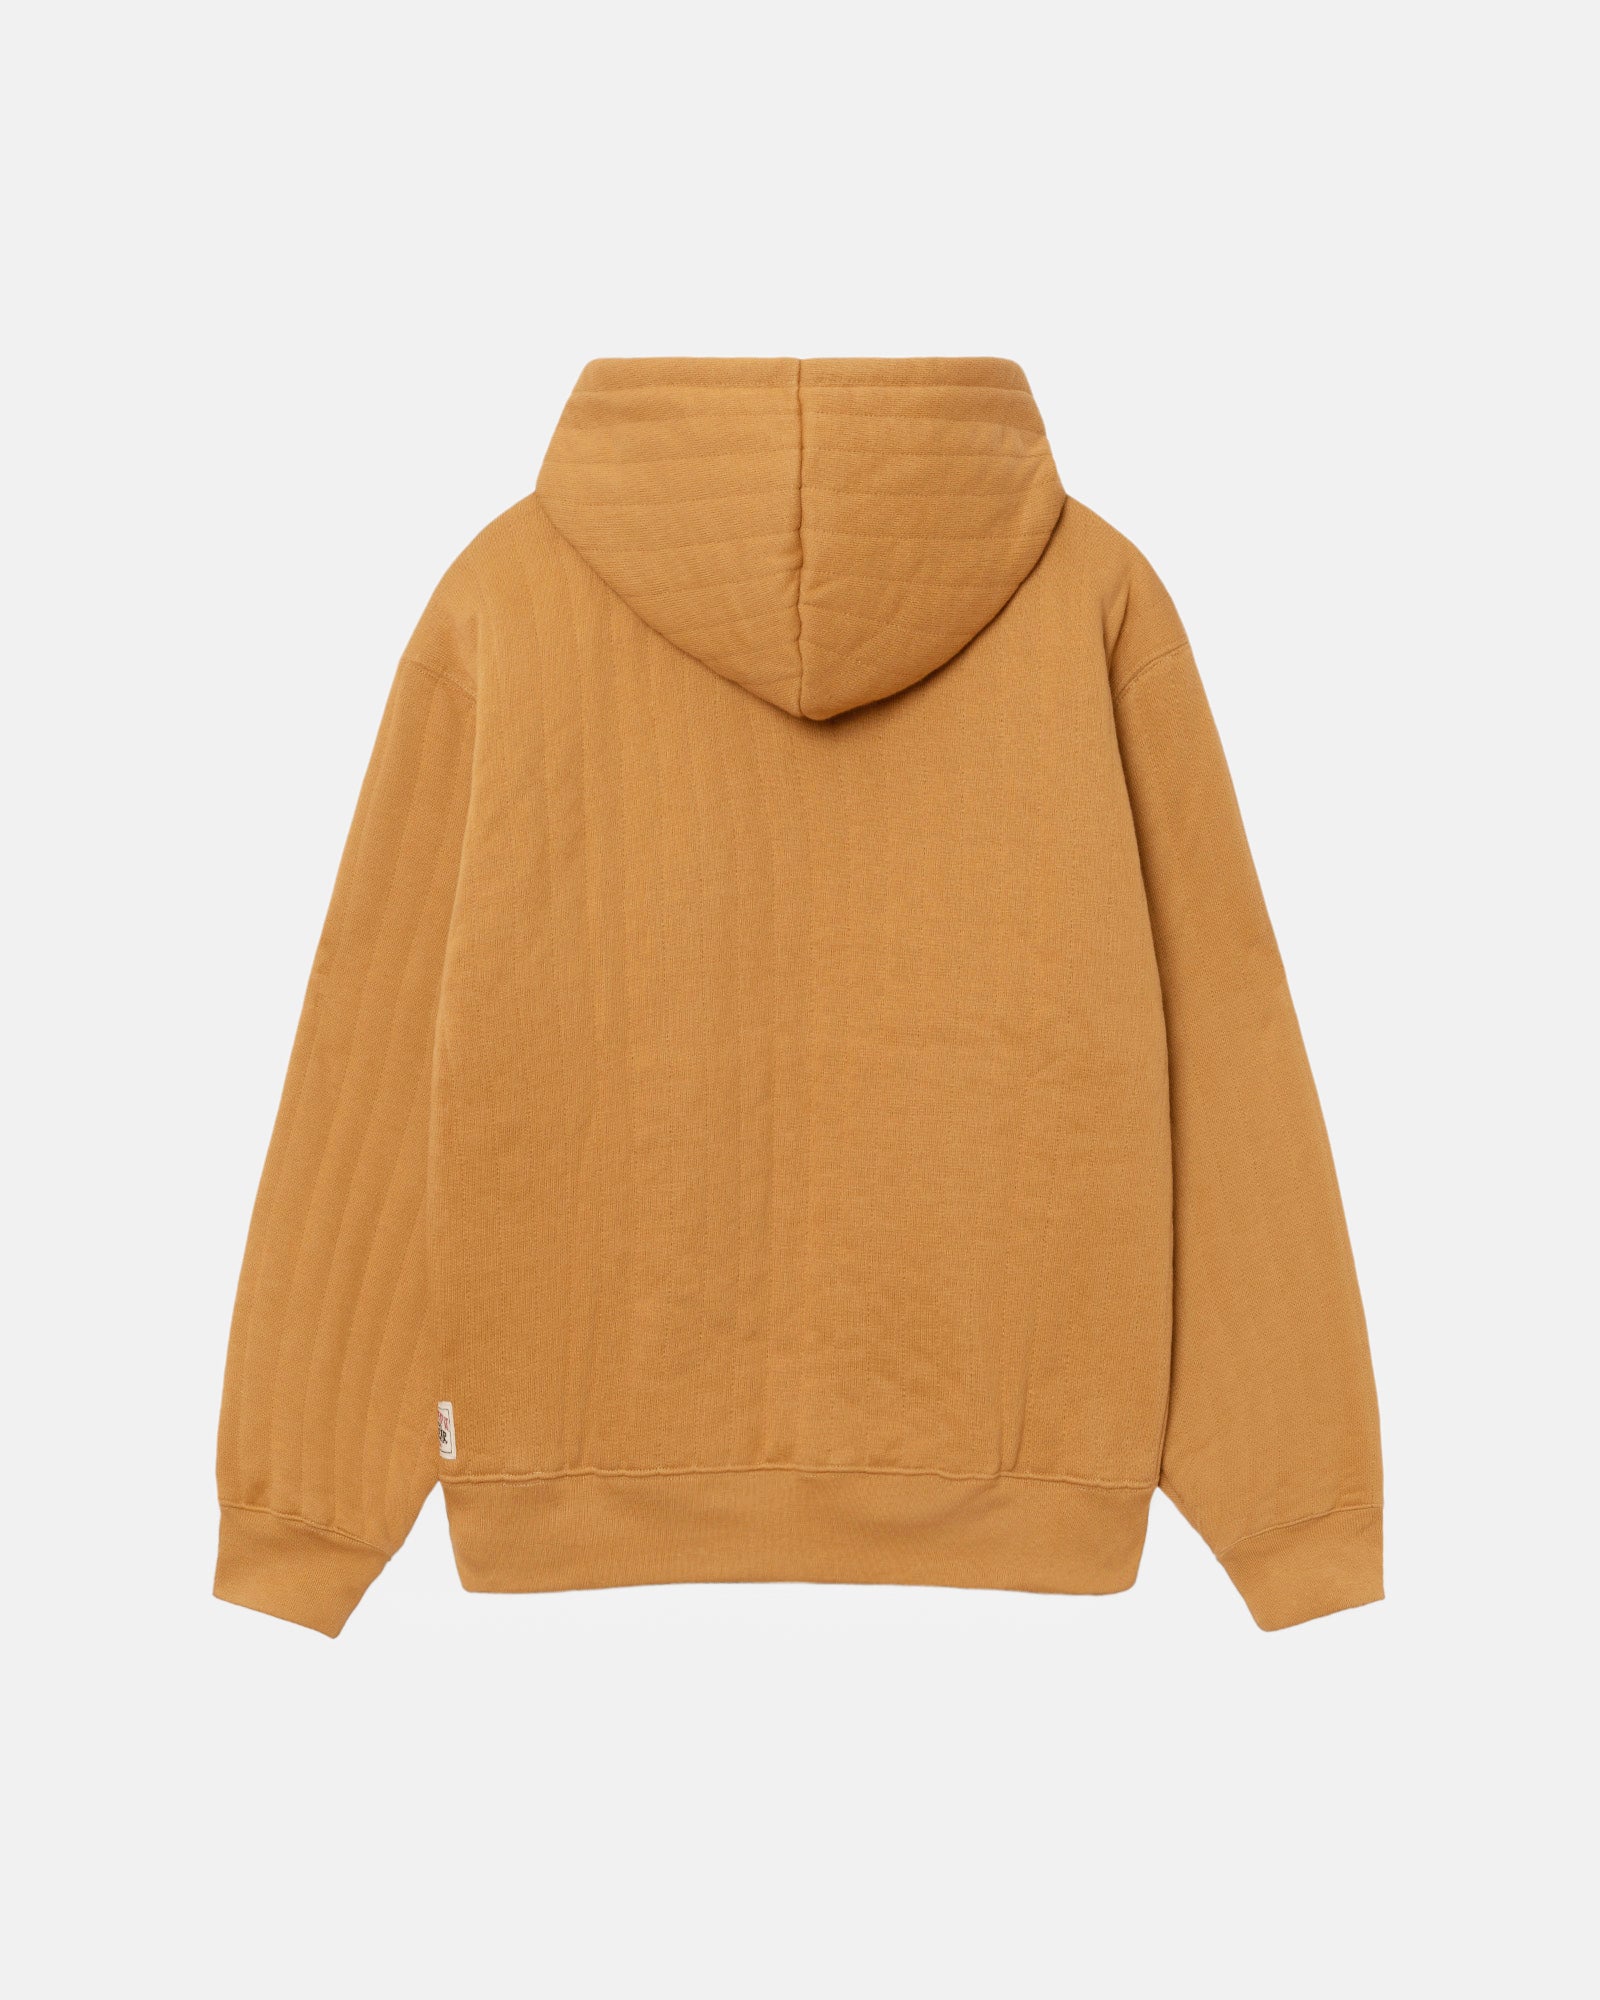 Sweats: Fleece Zip Up Sweatshirts by Stüssy